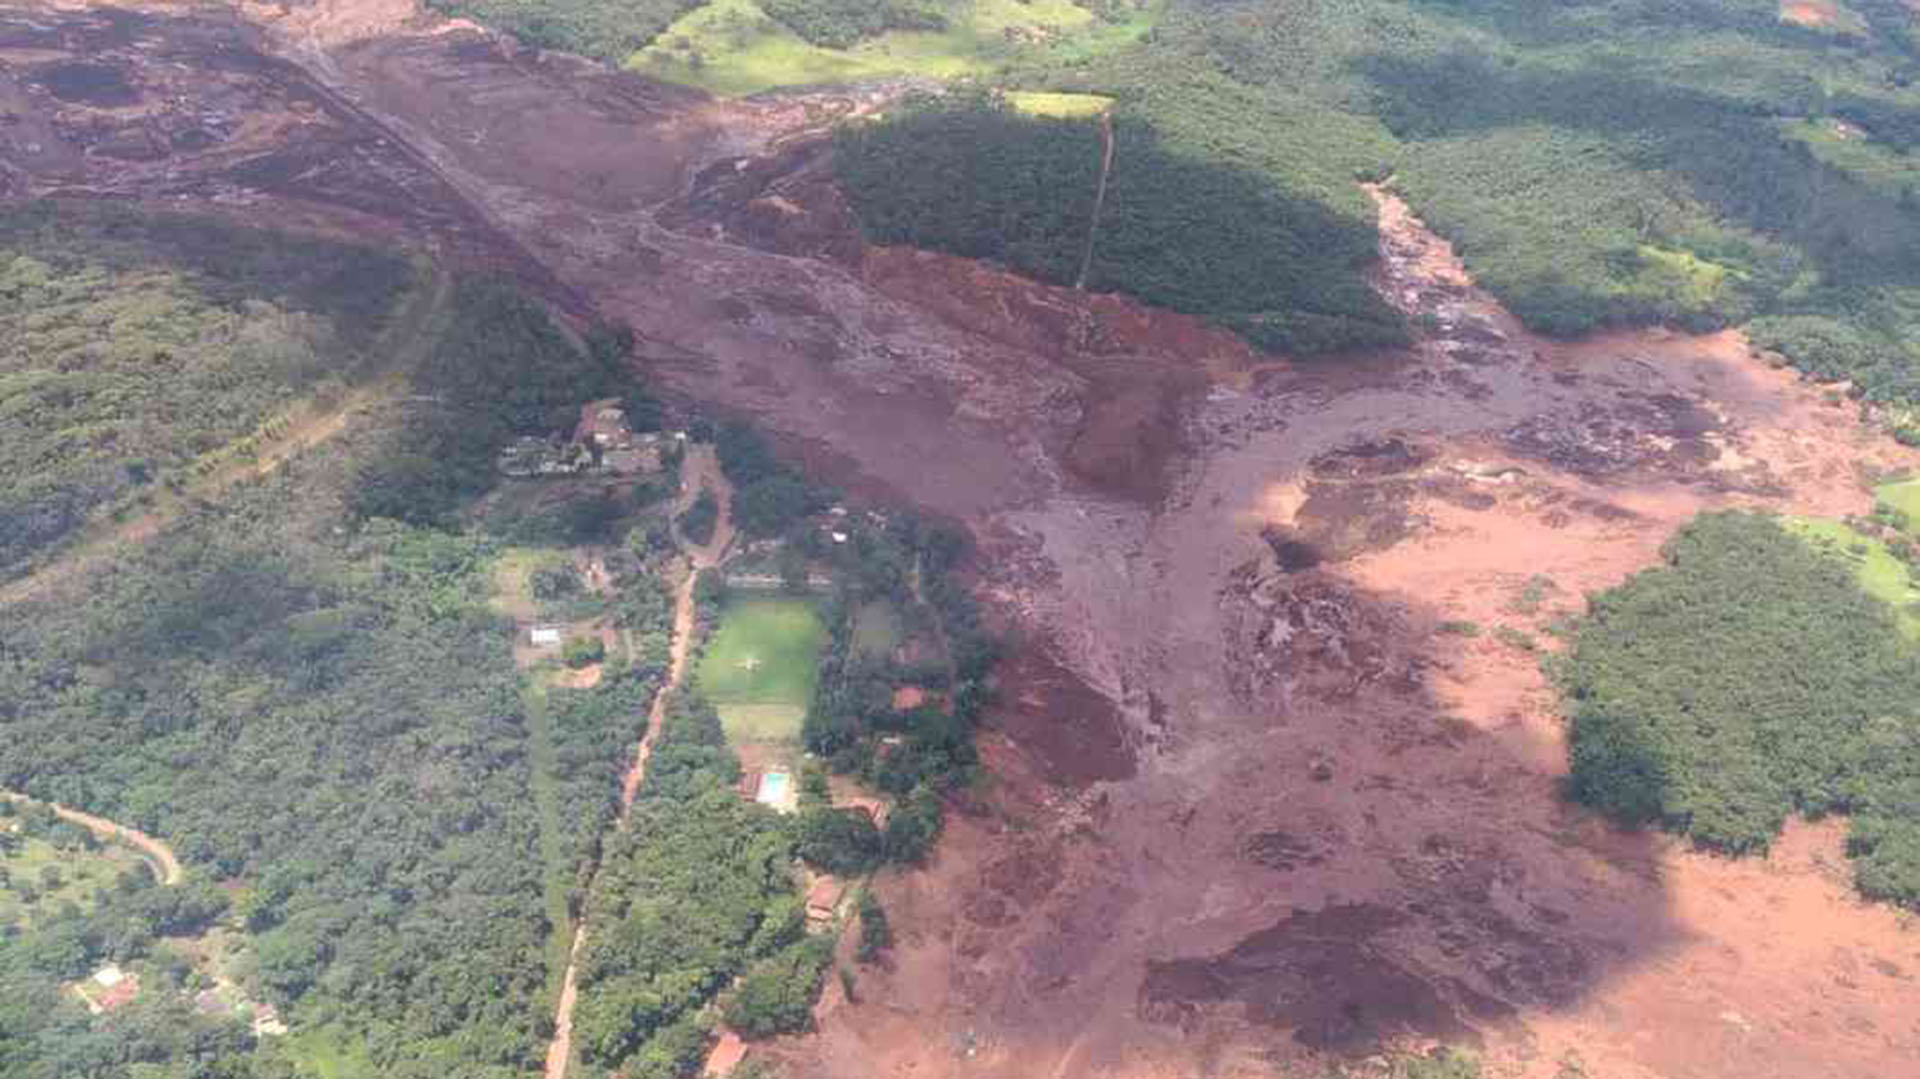 La tragedia sucedió en la localidad de Brumadinho, a 60 kilómetros de Belo Horizonte, la capital de Minas (Foto: Cuerpo de Bomberos / Divulgación)